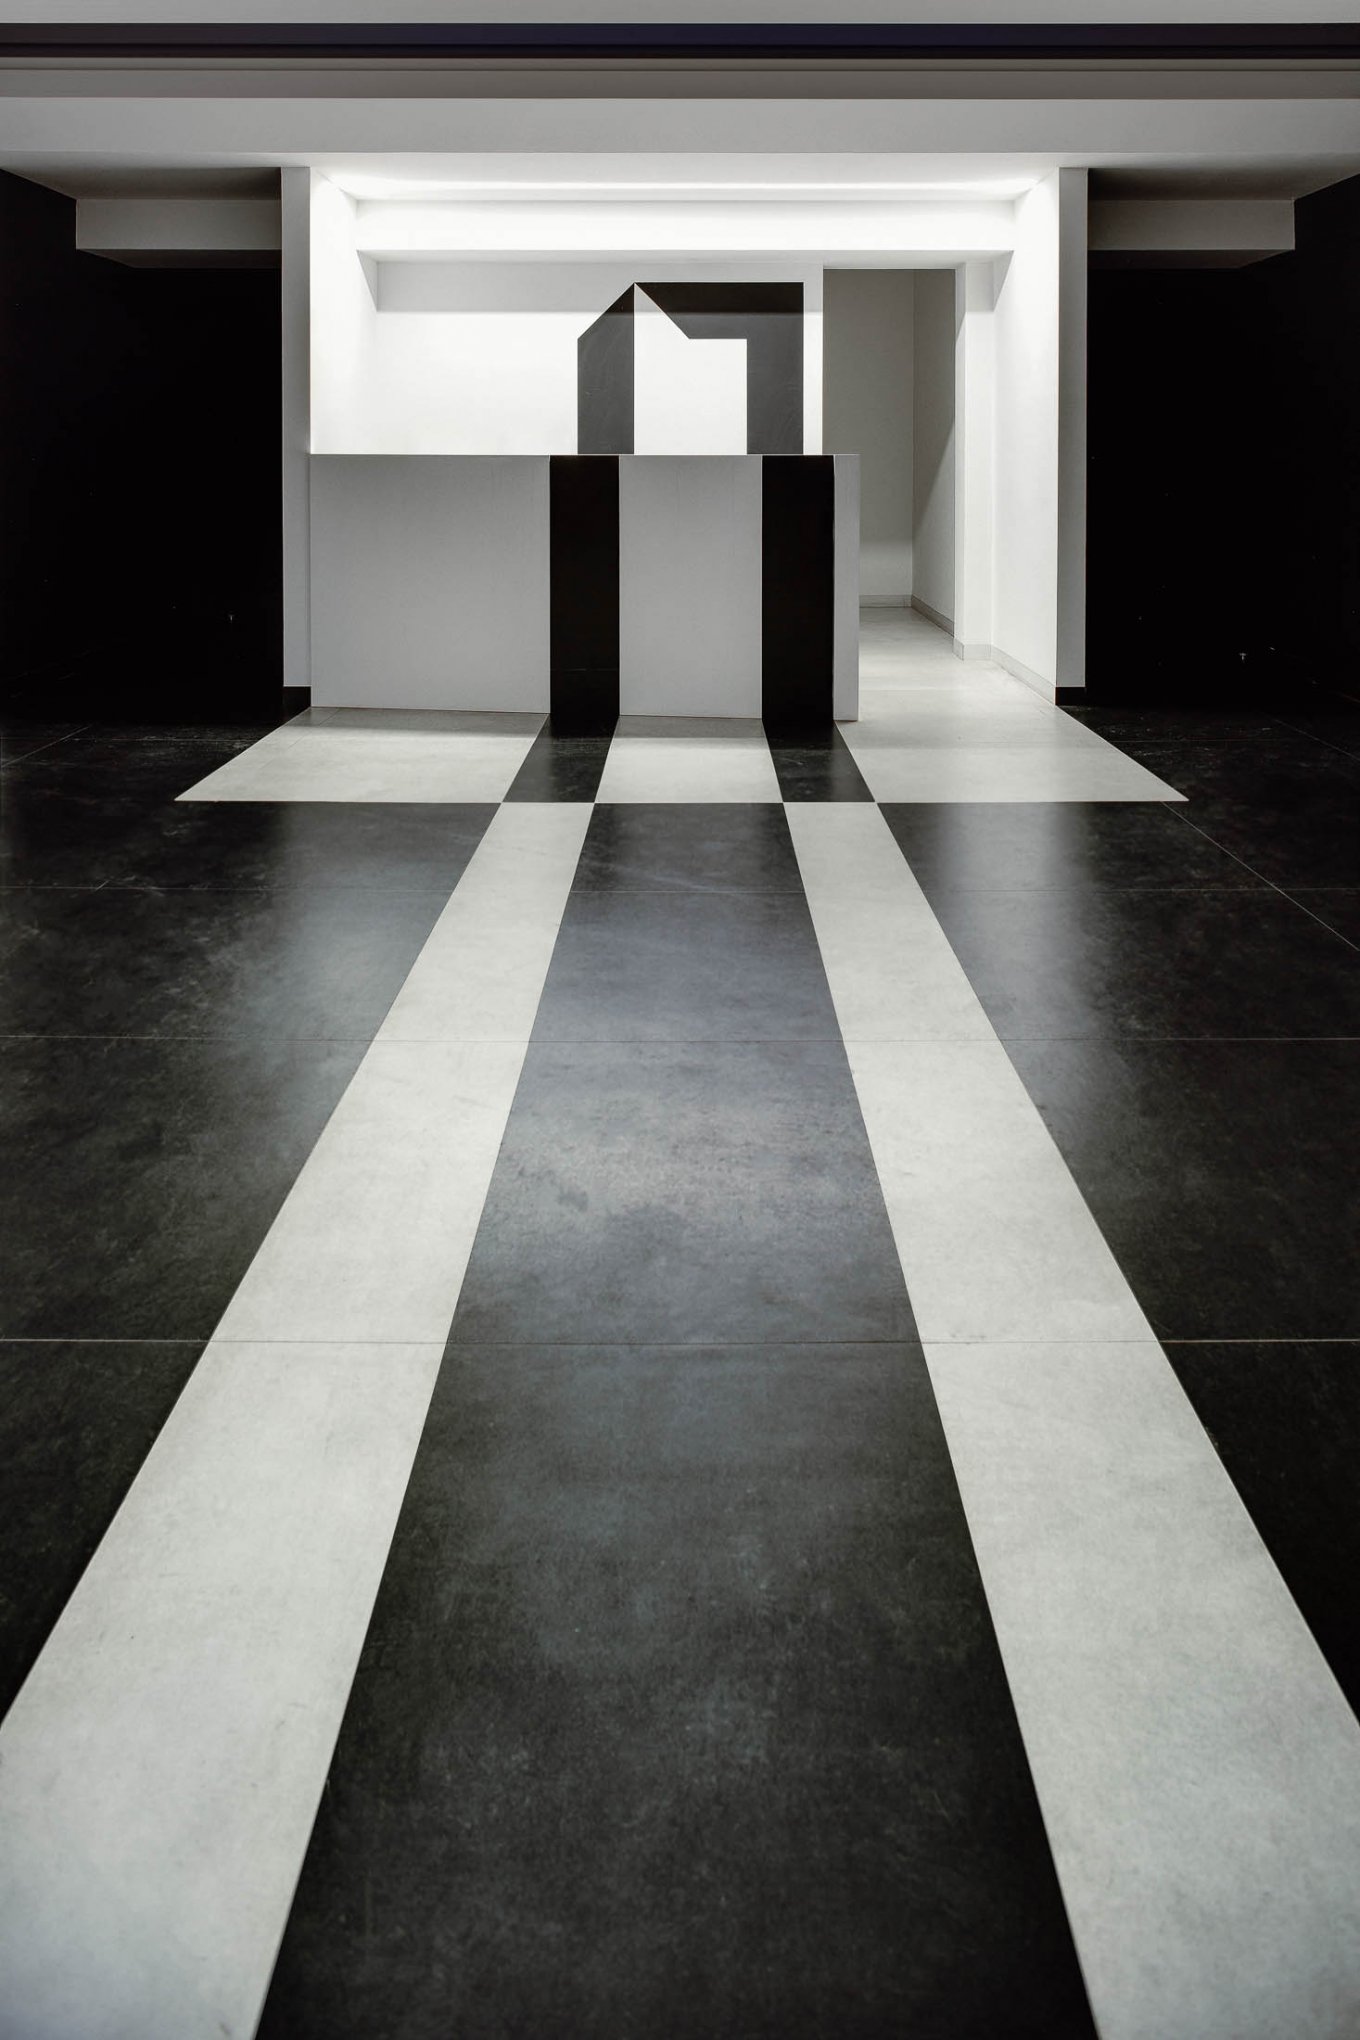 wineo Bodenbelag in Kunstgalerie Kunstausstellung Modern schwarz weiß